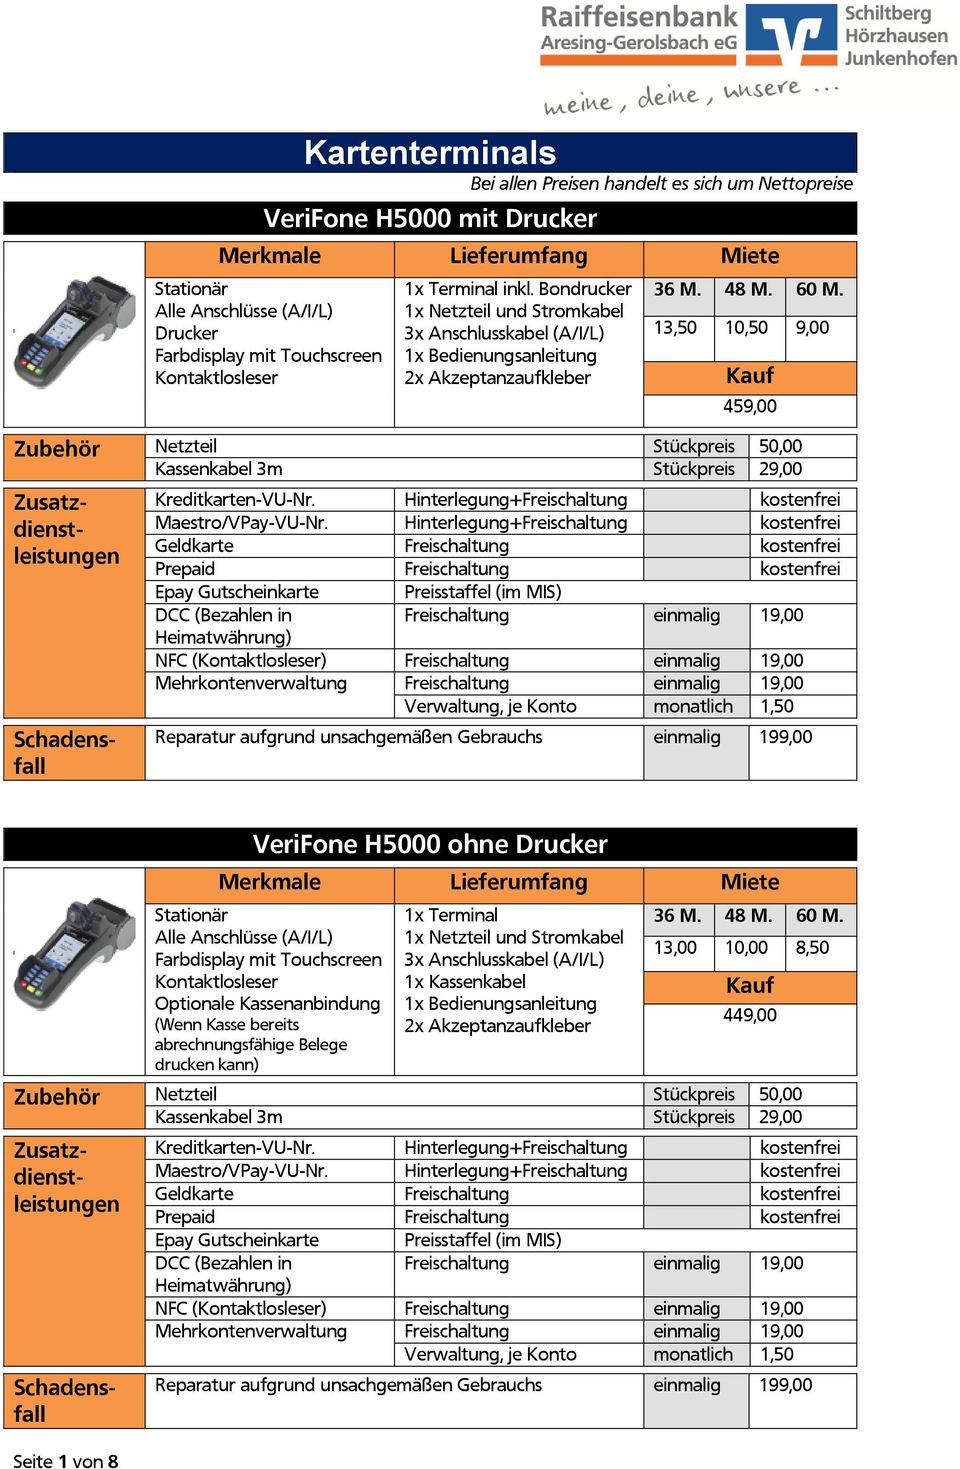 H5000 ohne Drucker Stationär Alle Anschlüsse (A/I/L) mit Touchscreen Optionale Kassenanbindung (Wenn Kasse bereits abrechnungsfähige Belege drucken kann) 1x Terminal 3x